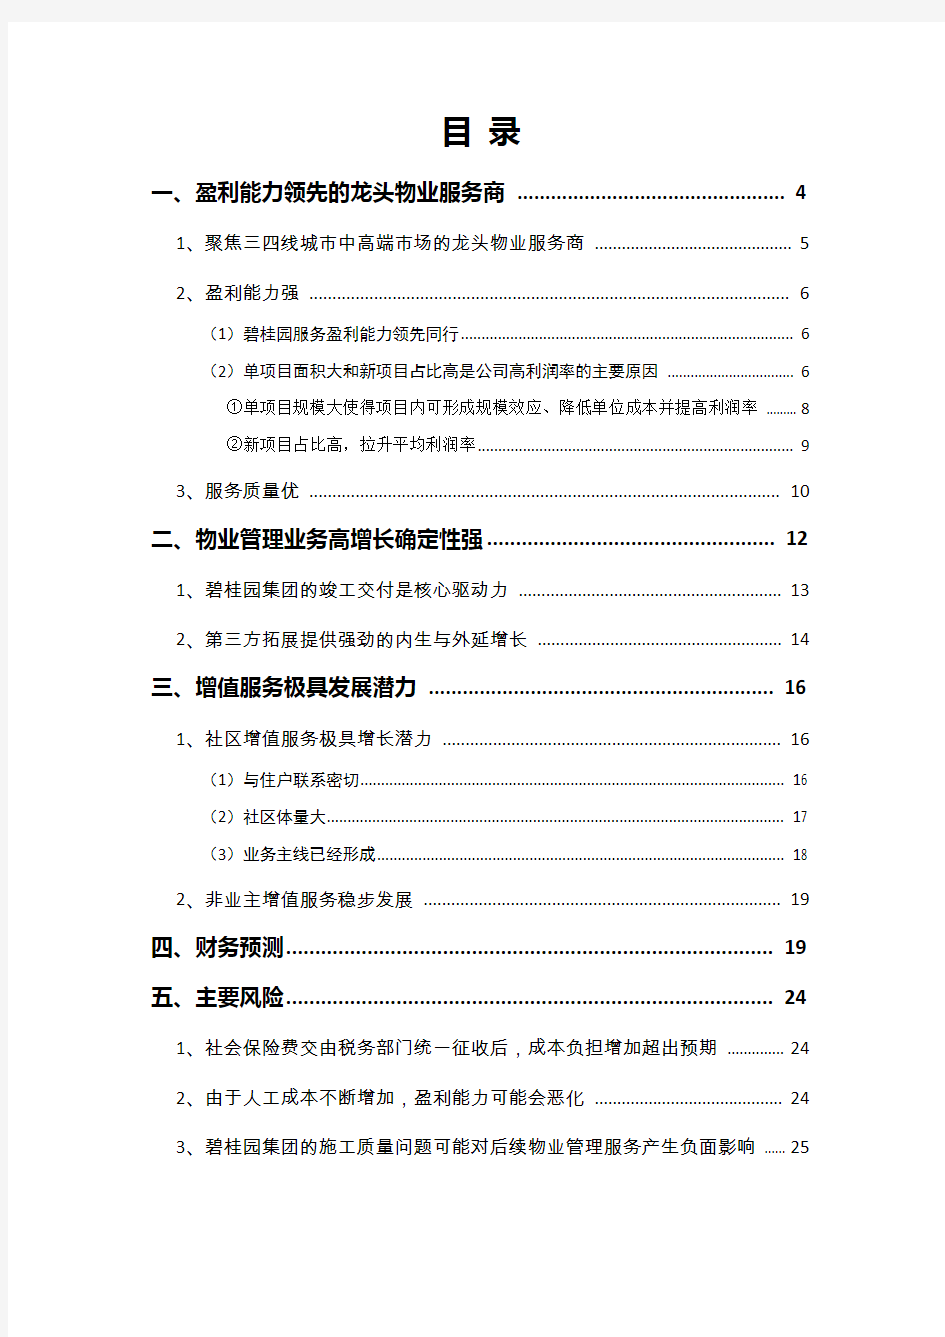 2018年物业管理行业碧桂园服务分析报告